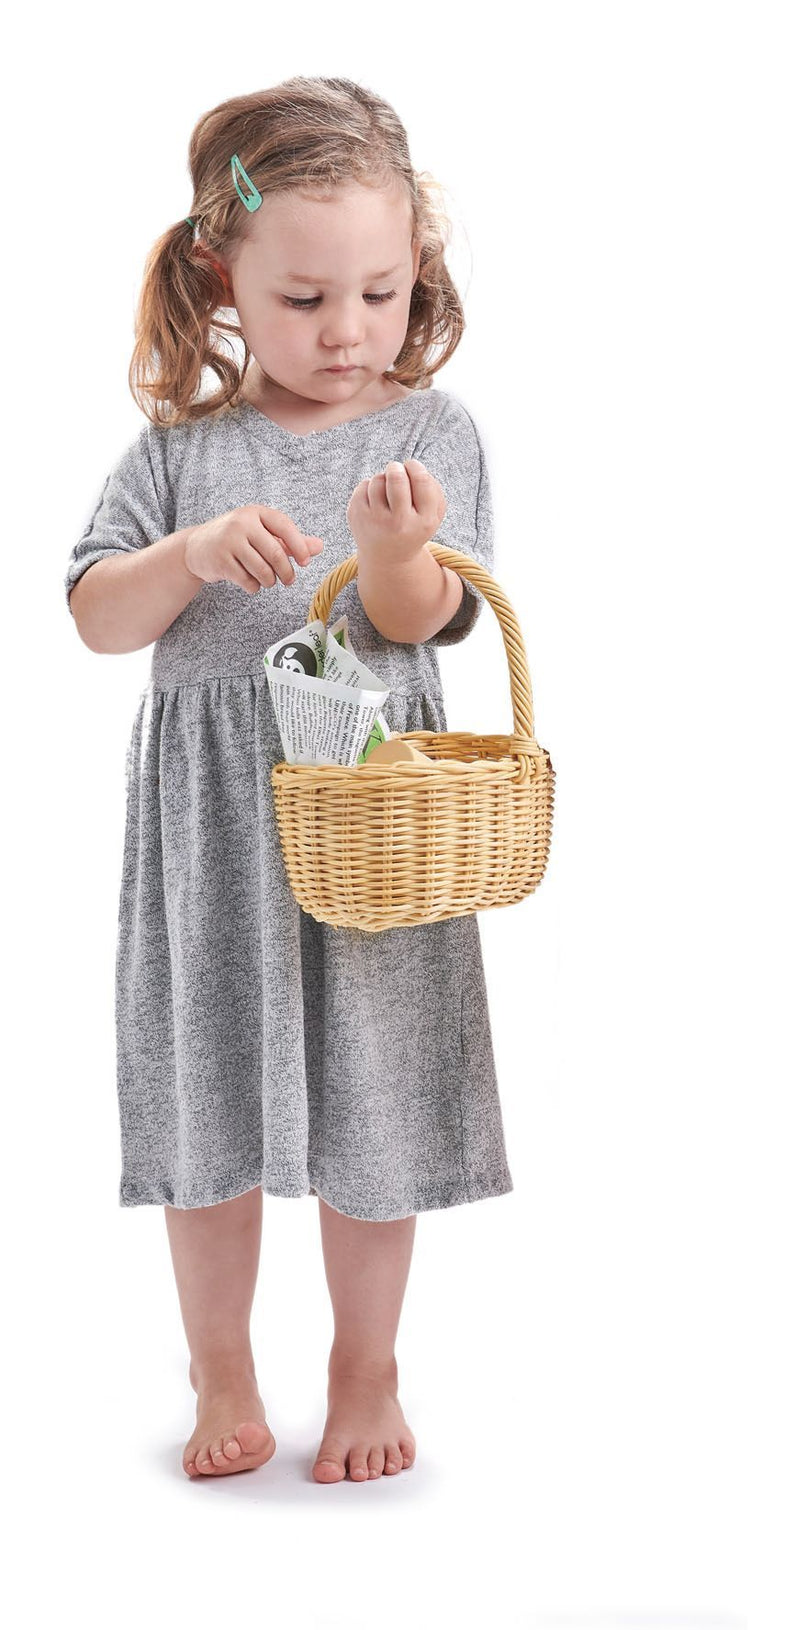 Tender Leaf Toys | Shopping basket